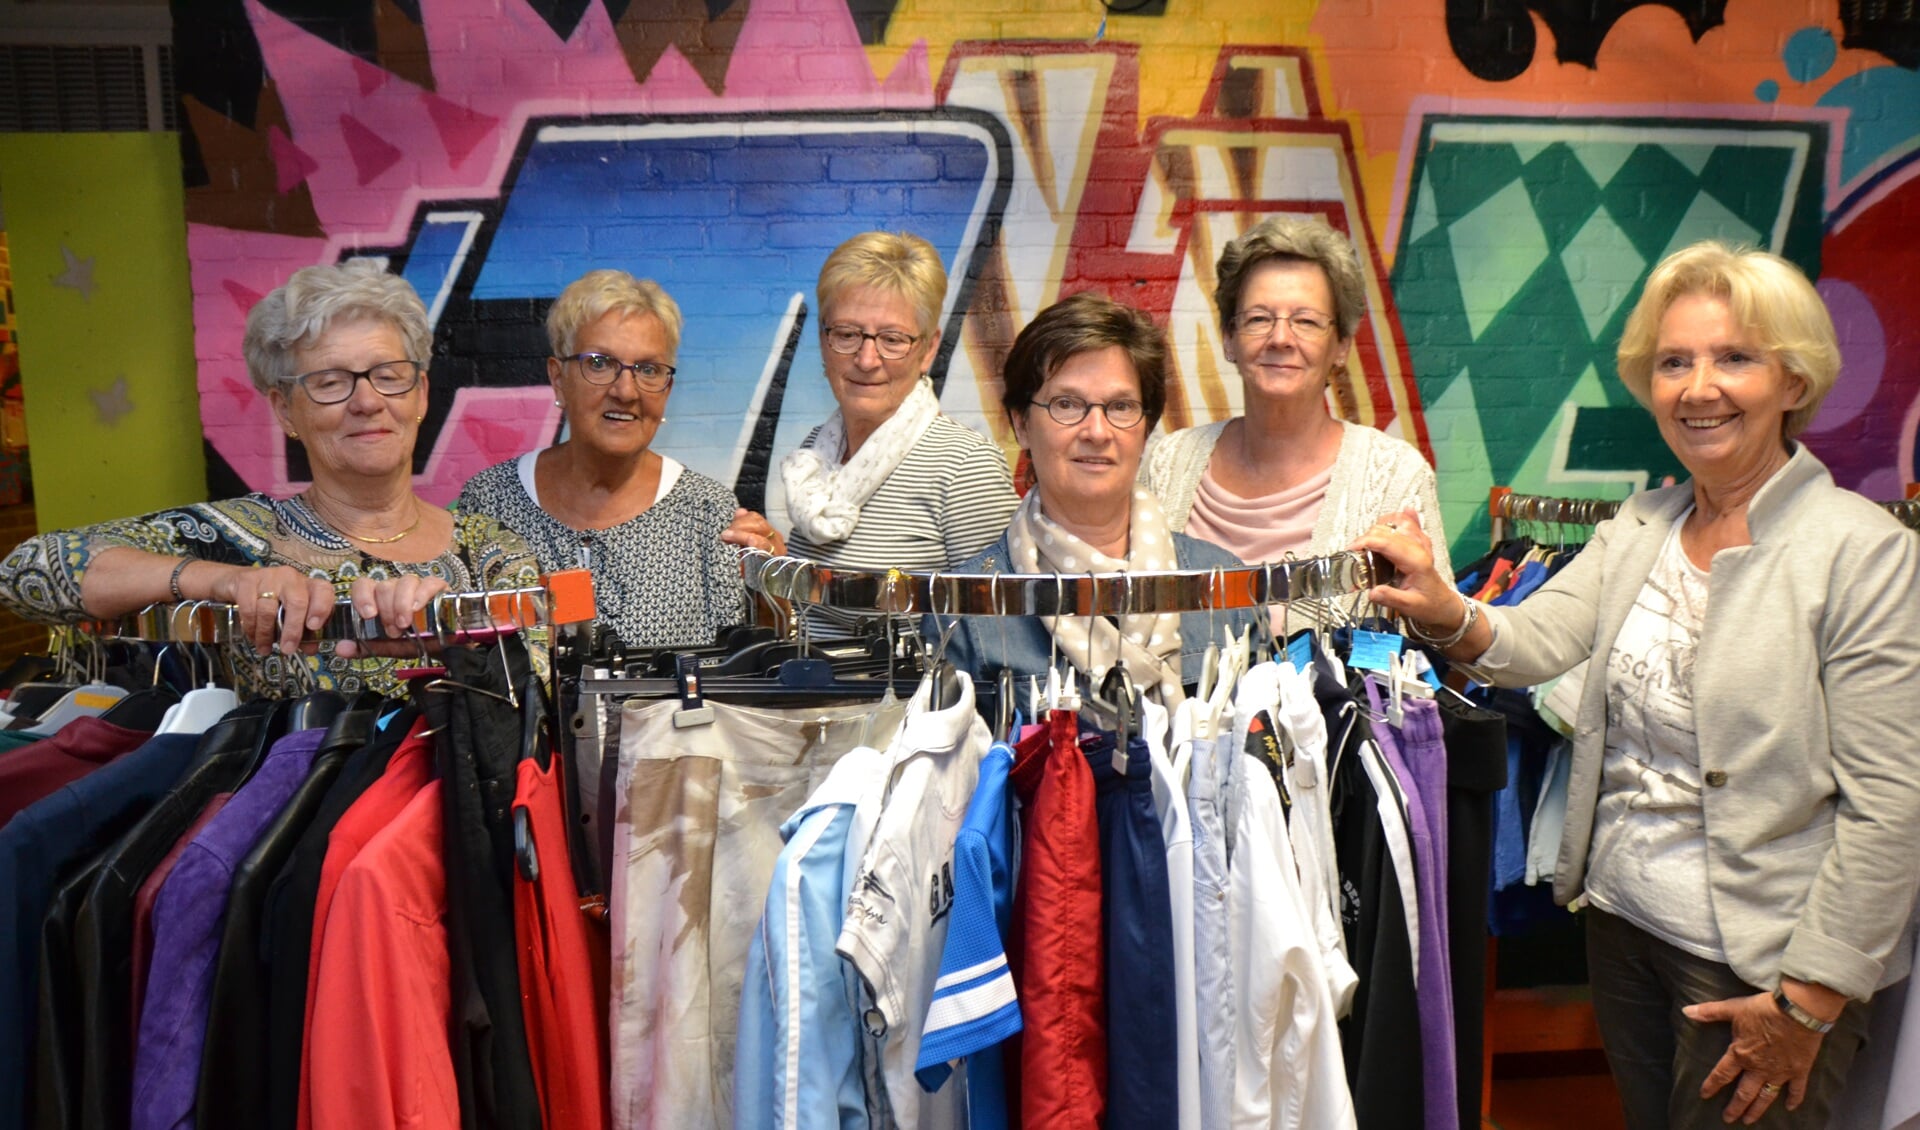 Vlnr: Henny Kannekens, Fien Pietjouw, Nelleke van de Merbel, Lilian Adriaansen, Eva Koole en Lia Knopjes vormden jarenlang het vrijwilligersteam van de kledingbeurs in de Wittenhorst. 